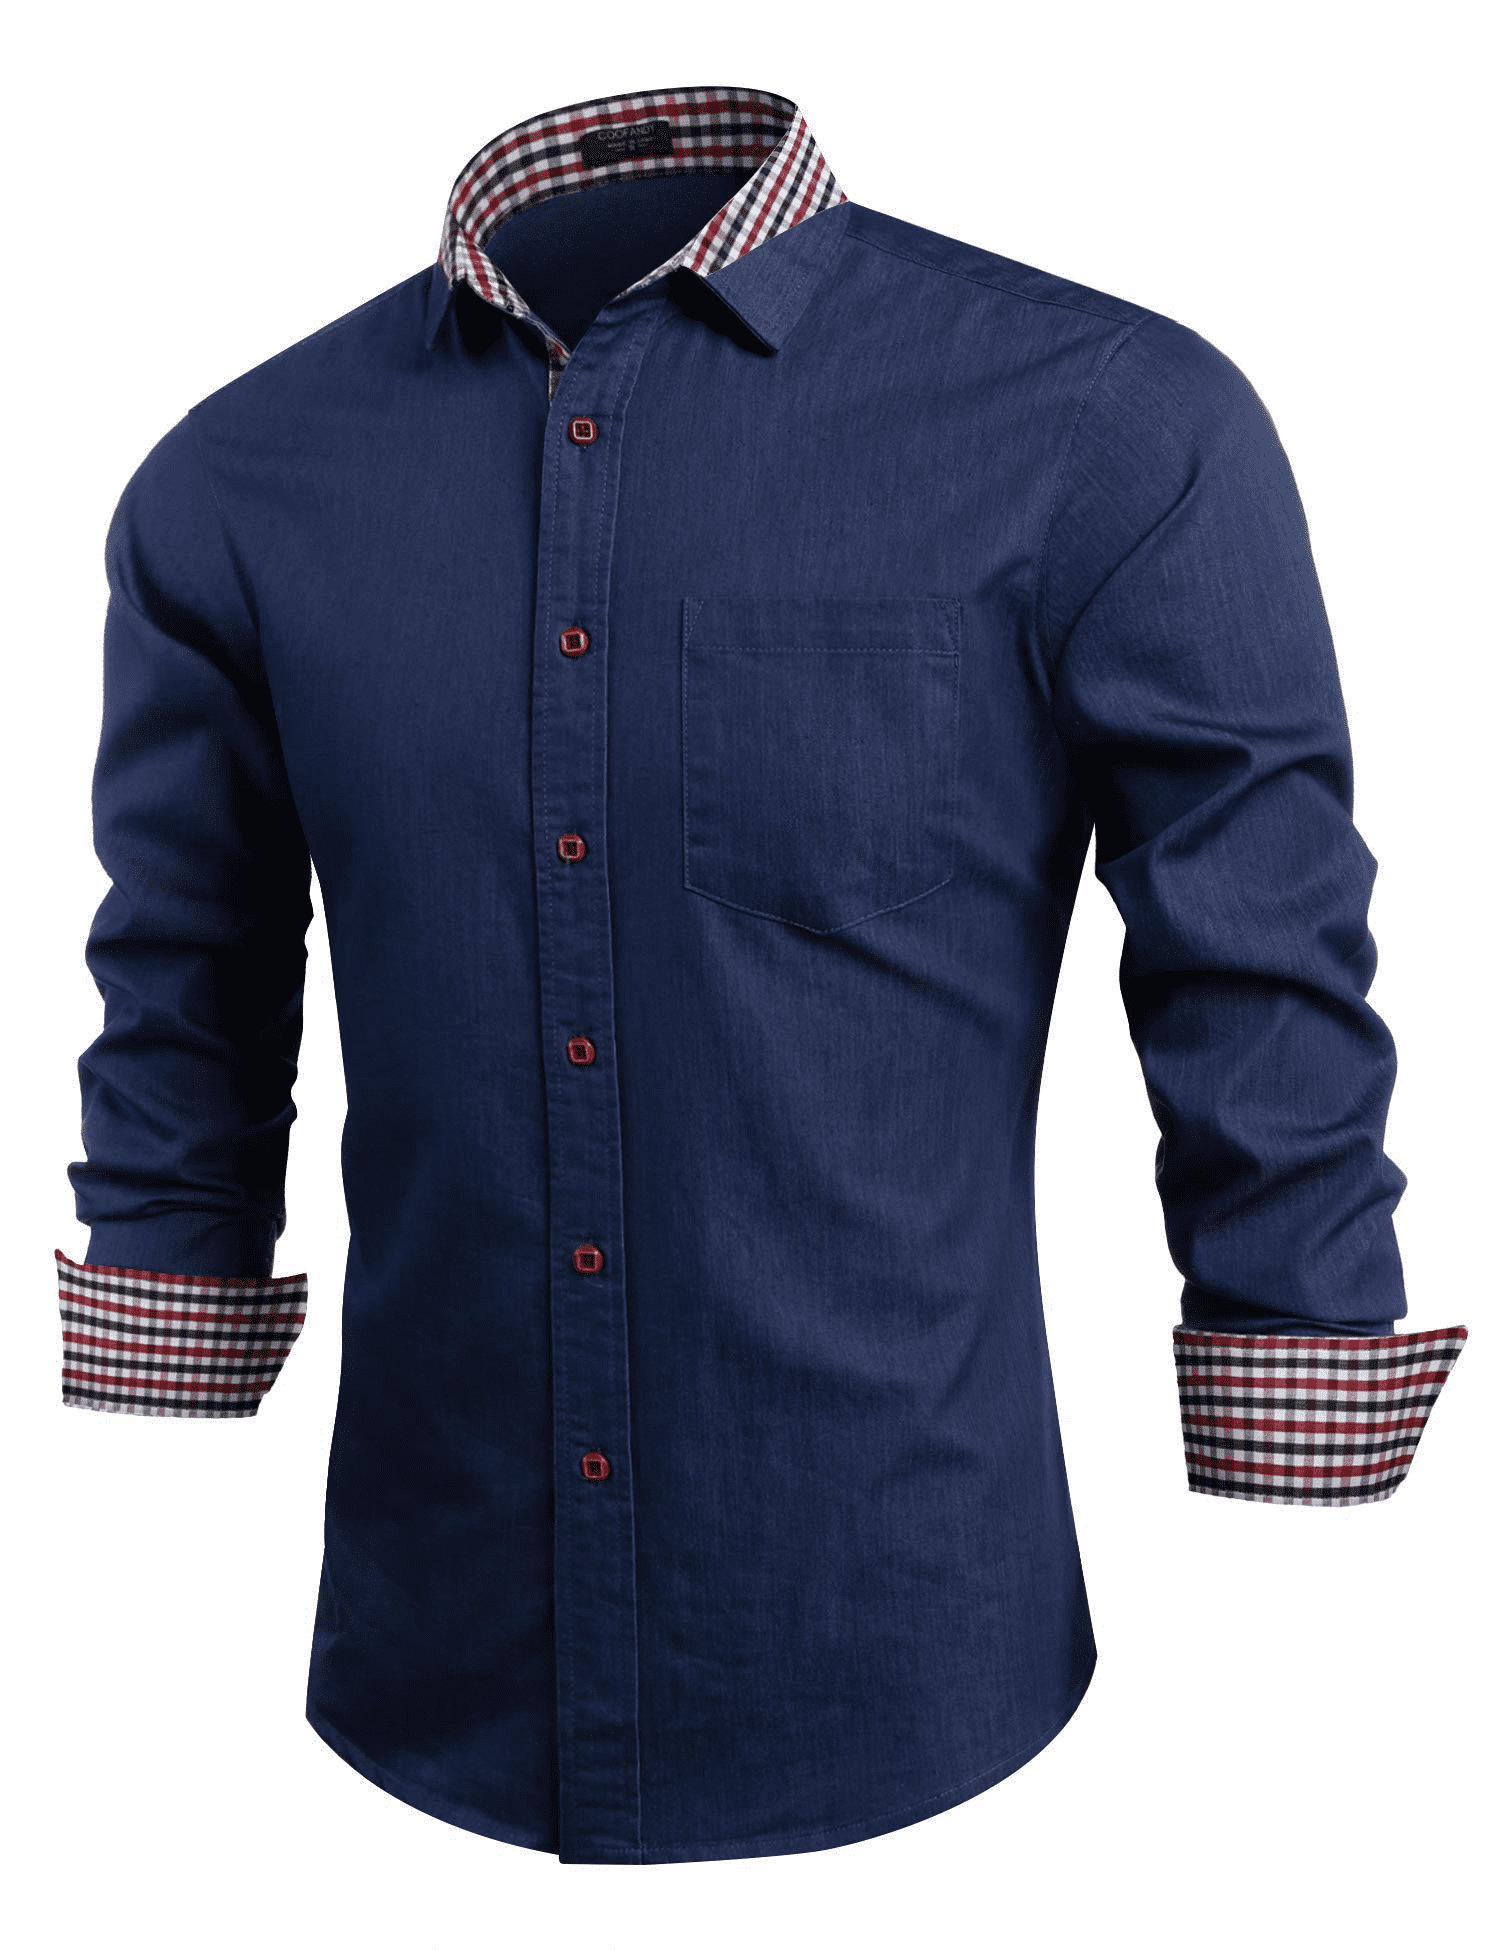 COOFANDY Men's Casual Short Sleeve Button Down Dress Shirt Denim Work Shirts 